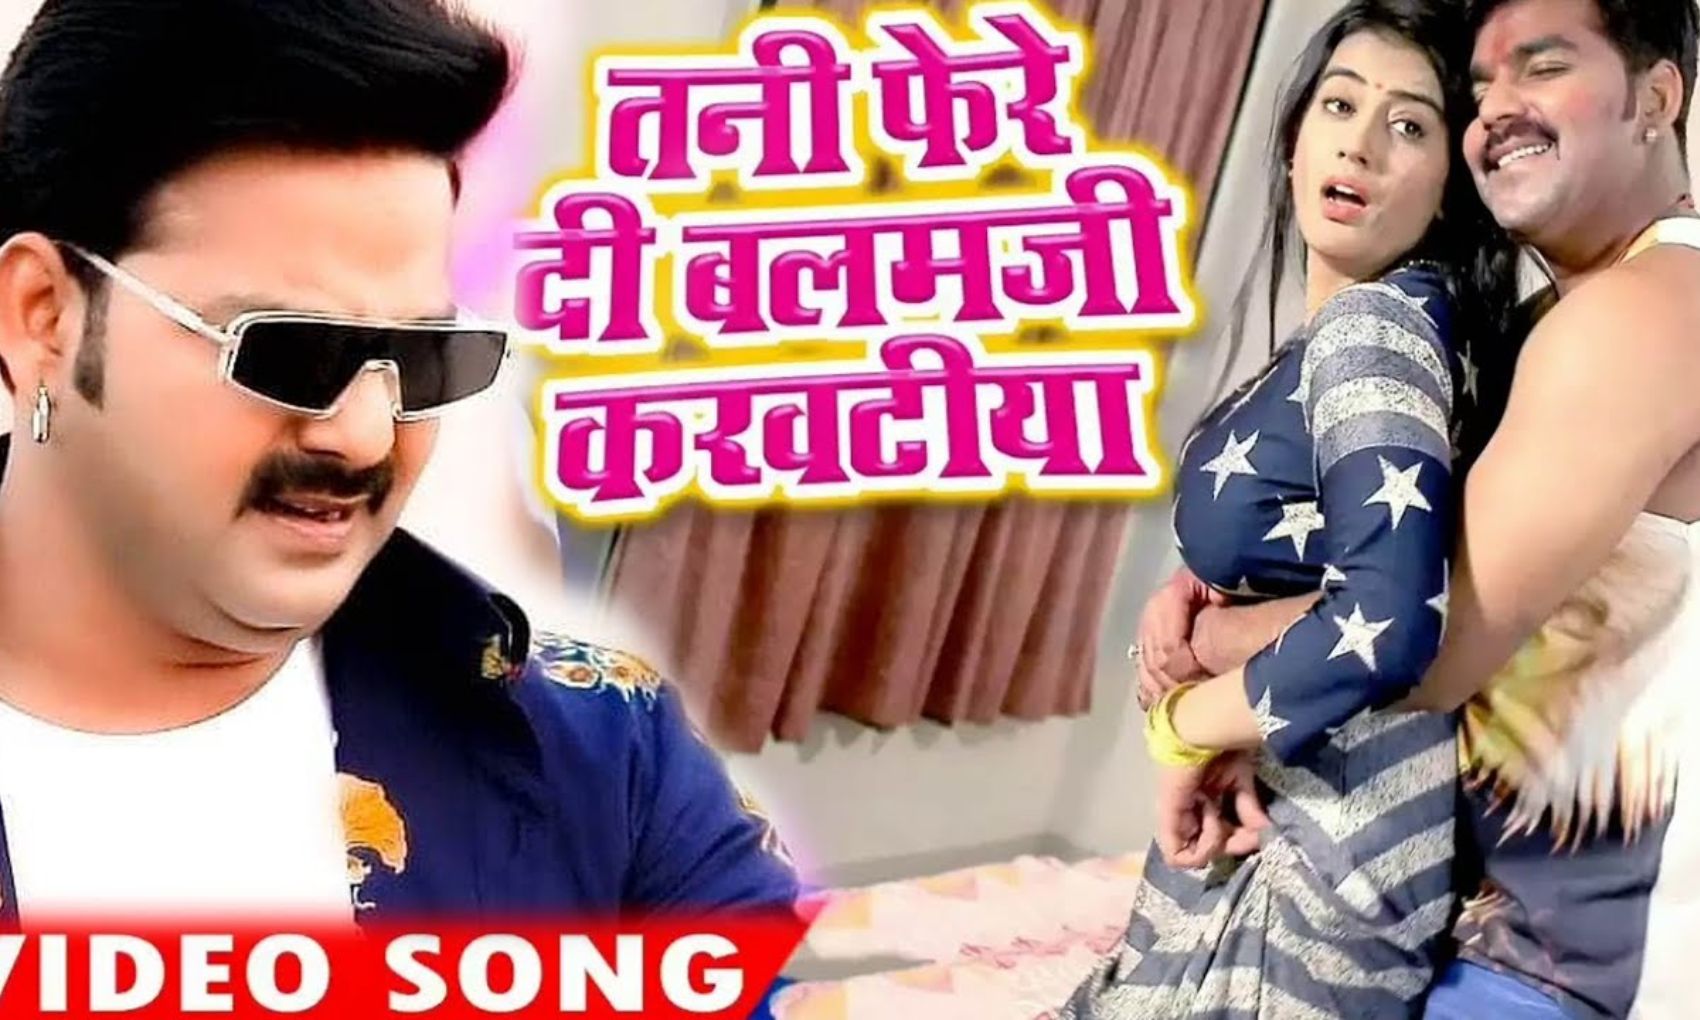 Akshara Singh and Pawan Singh Hot Video Song: पवन सिंह ने अक्षरा सिंह संग किया जमकर रोमांस, देखें वीडियो